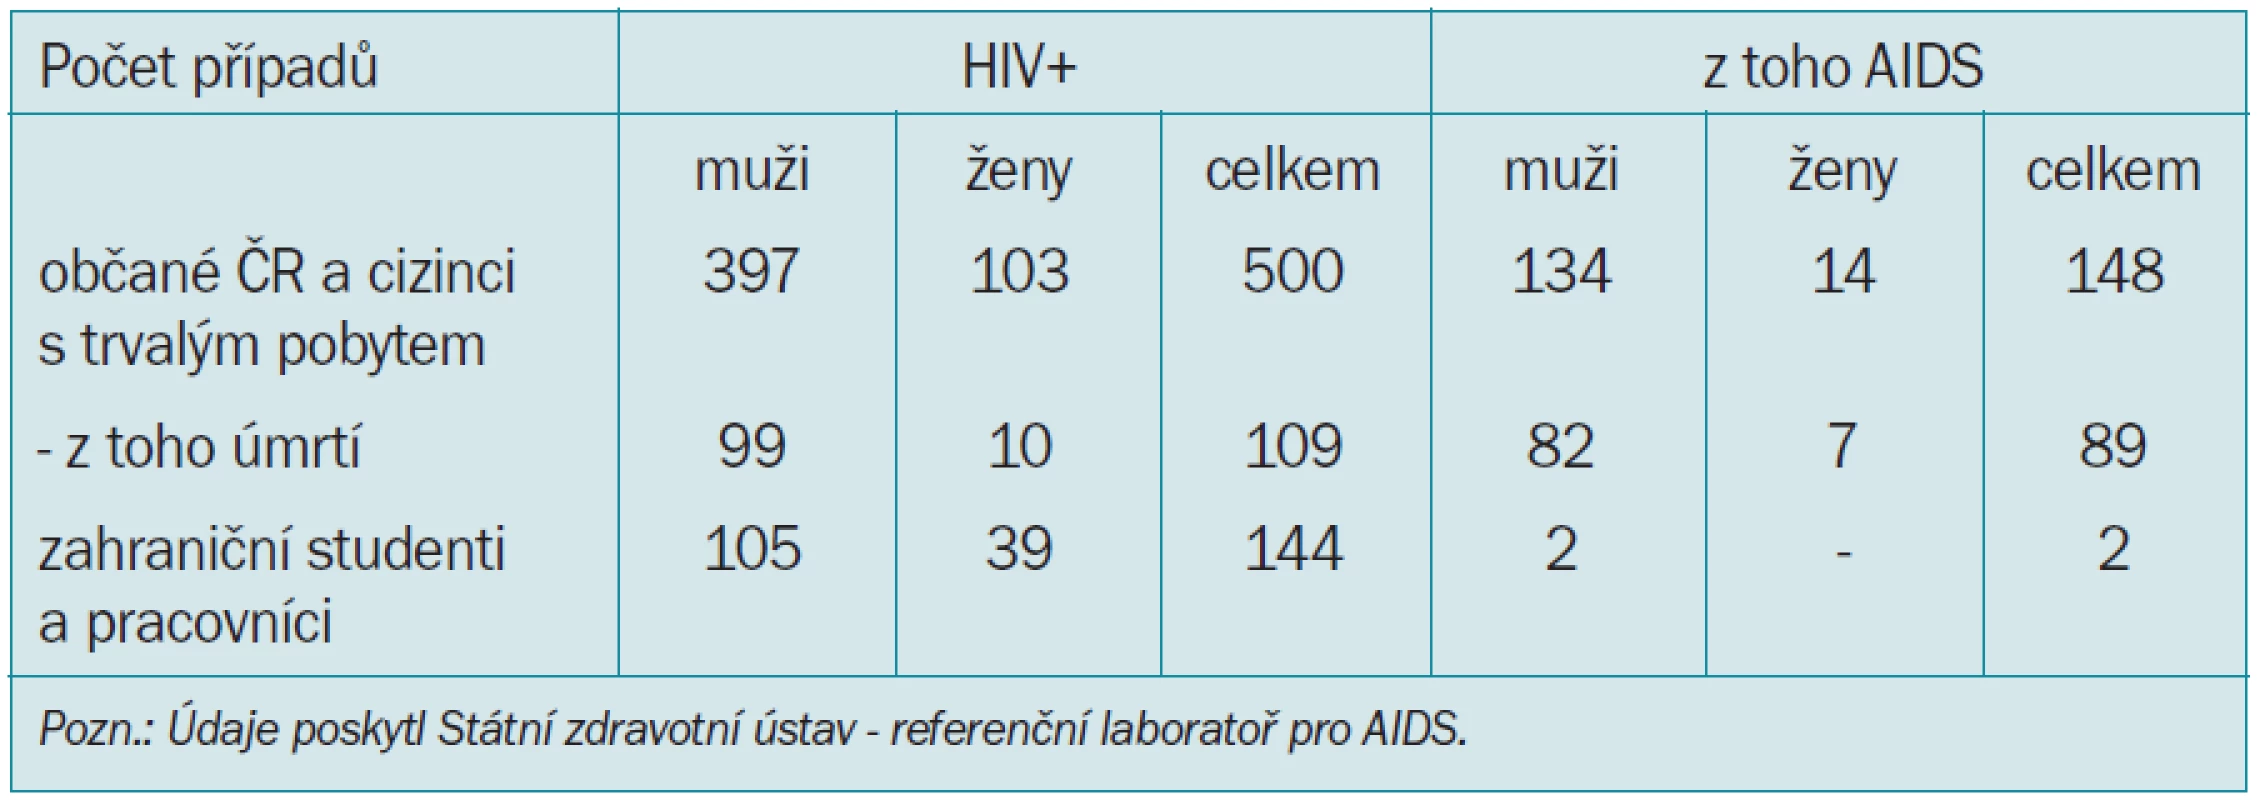 Počet případů HIV-pozitivních a AIDS v ČR. Kumulativní údaje k 31. 12. 2000.